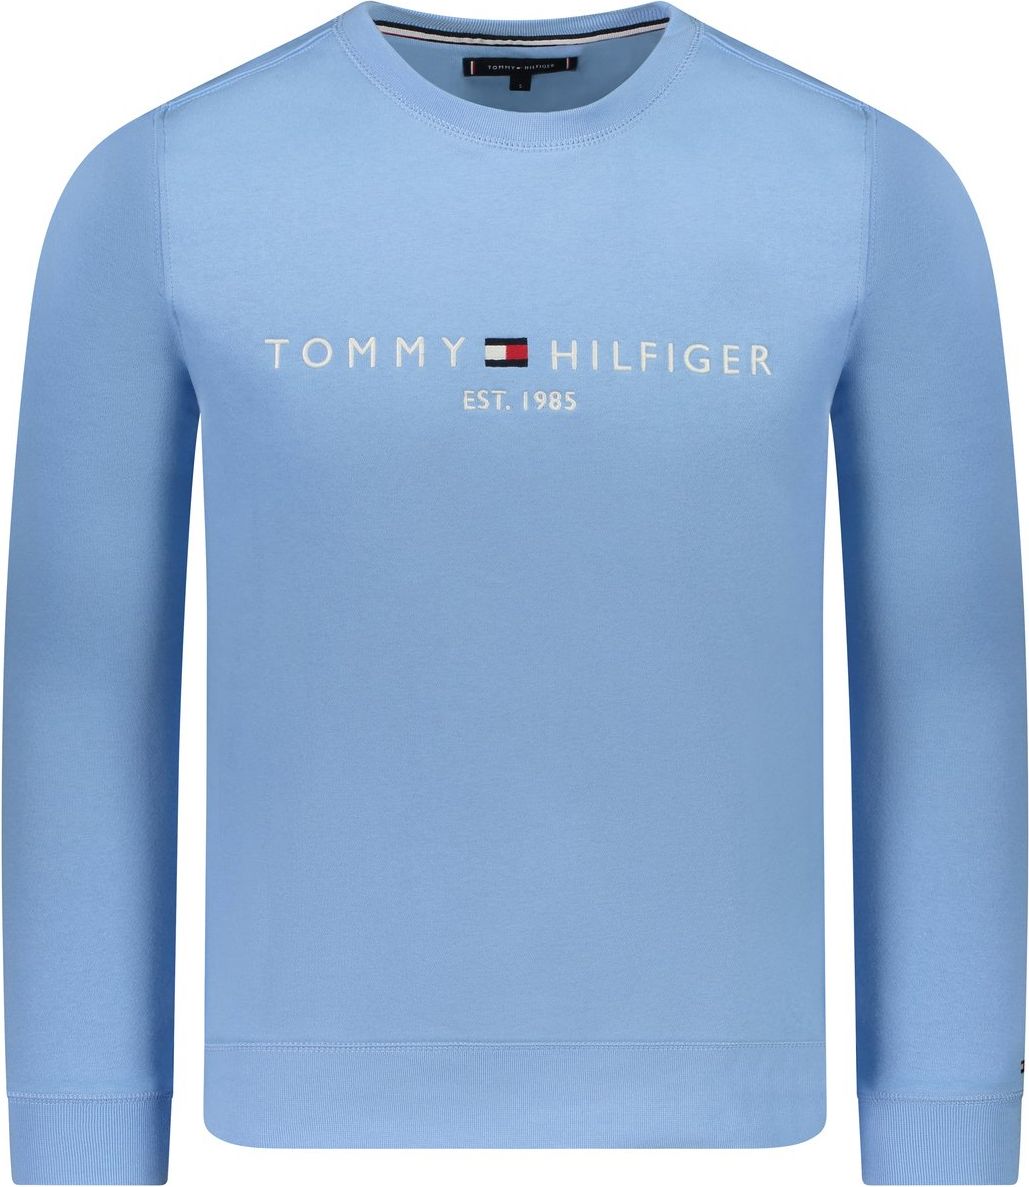 Tommy Hilfiger Sweater Blauw Blauw